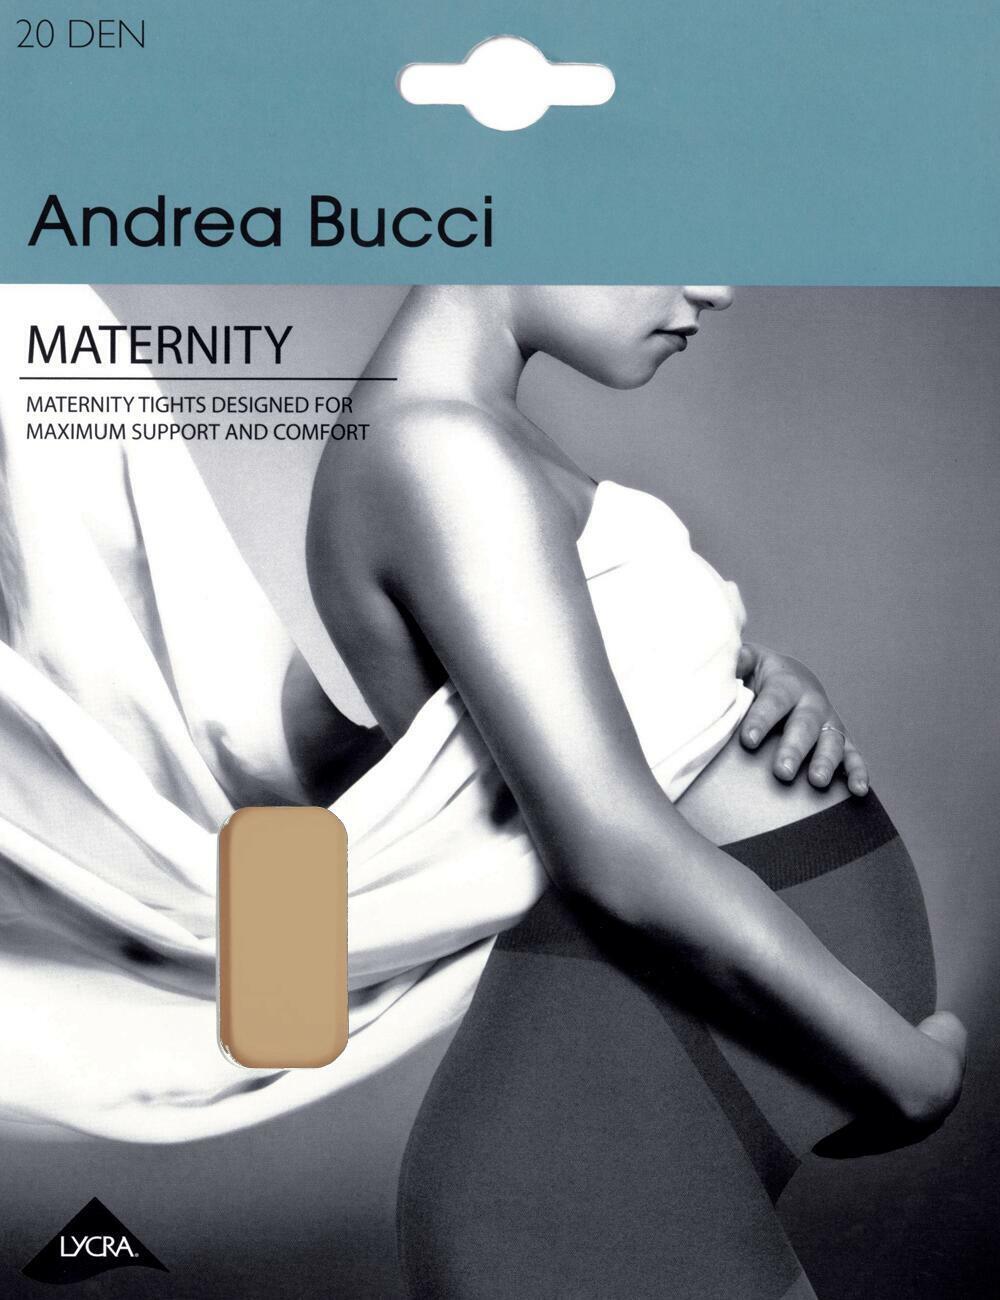 Andrea Bucci 20 Denier Maternity Tights